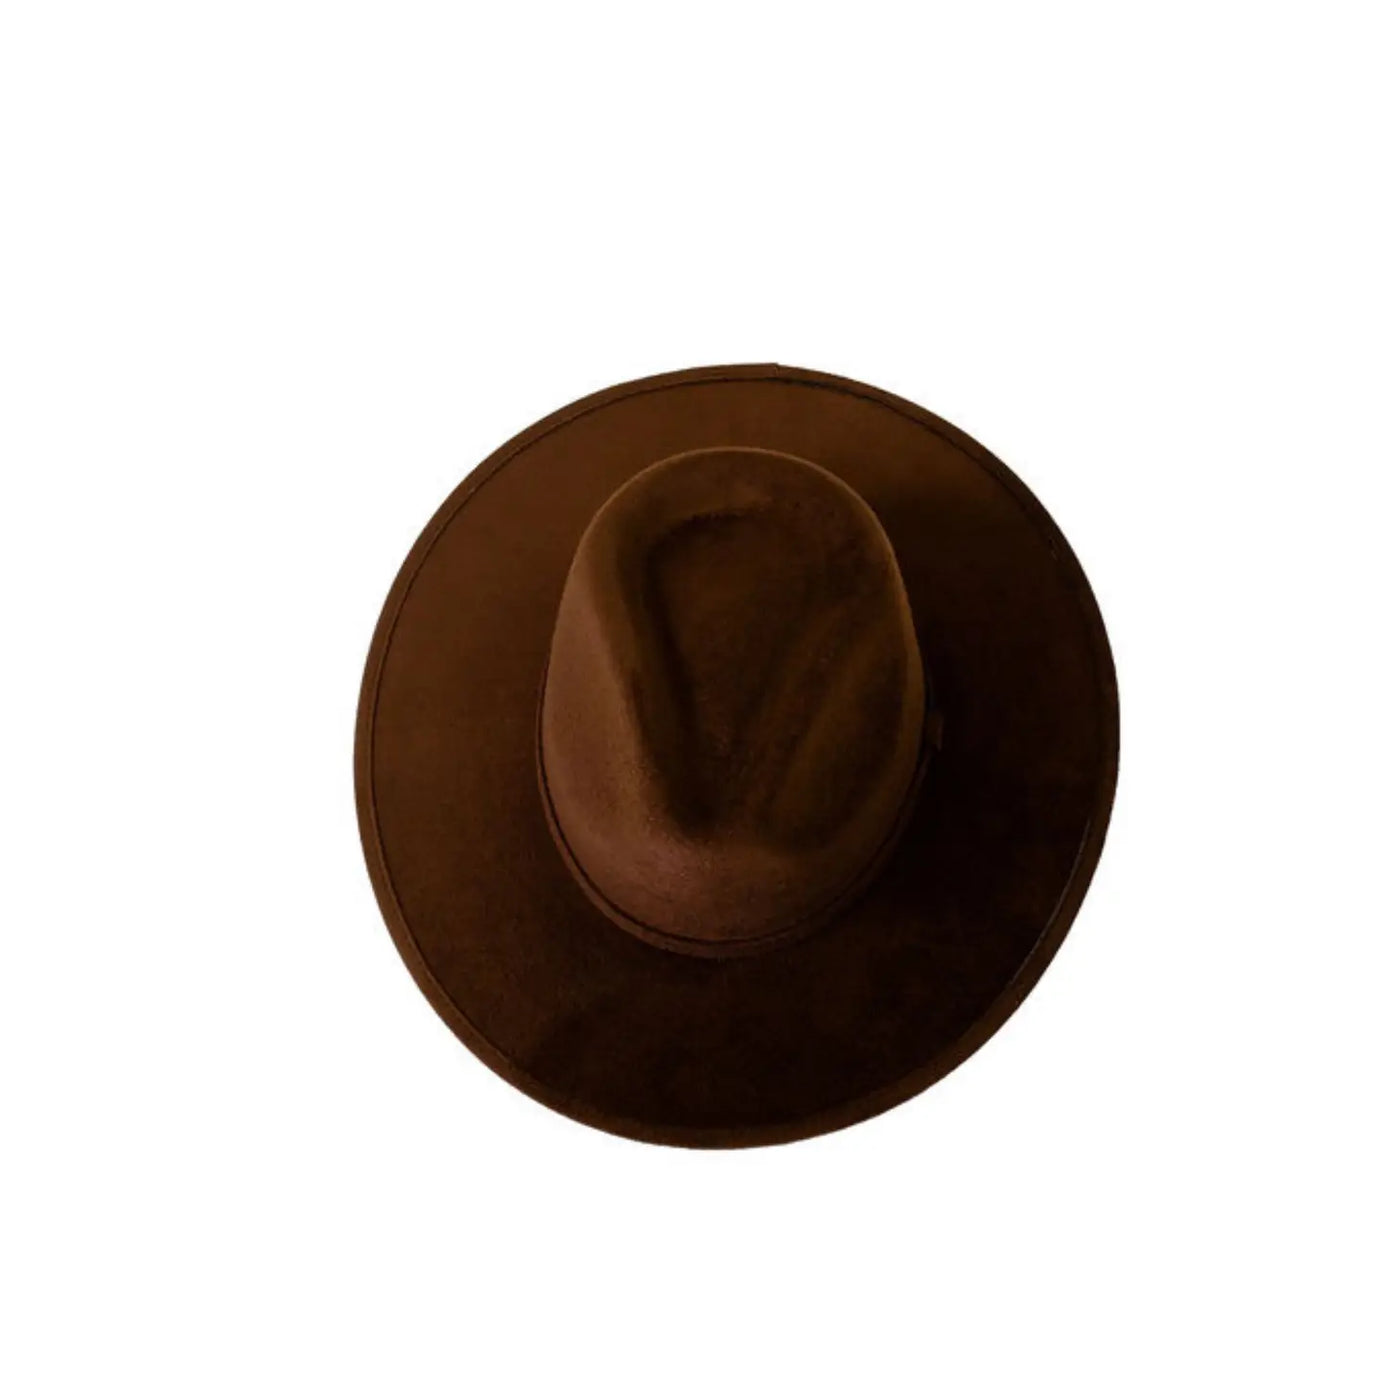 Vegan suede rancher hat